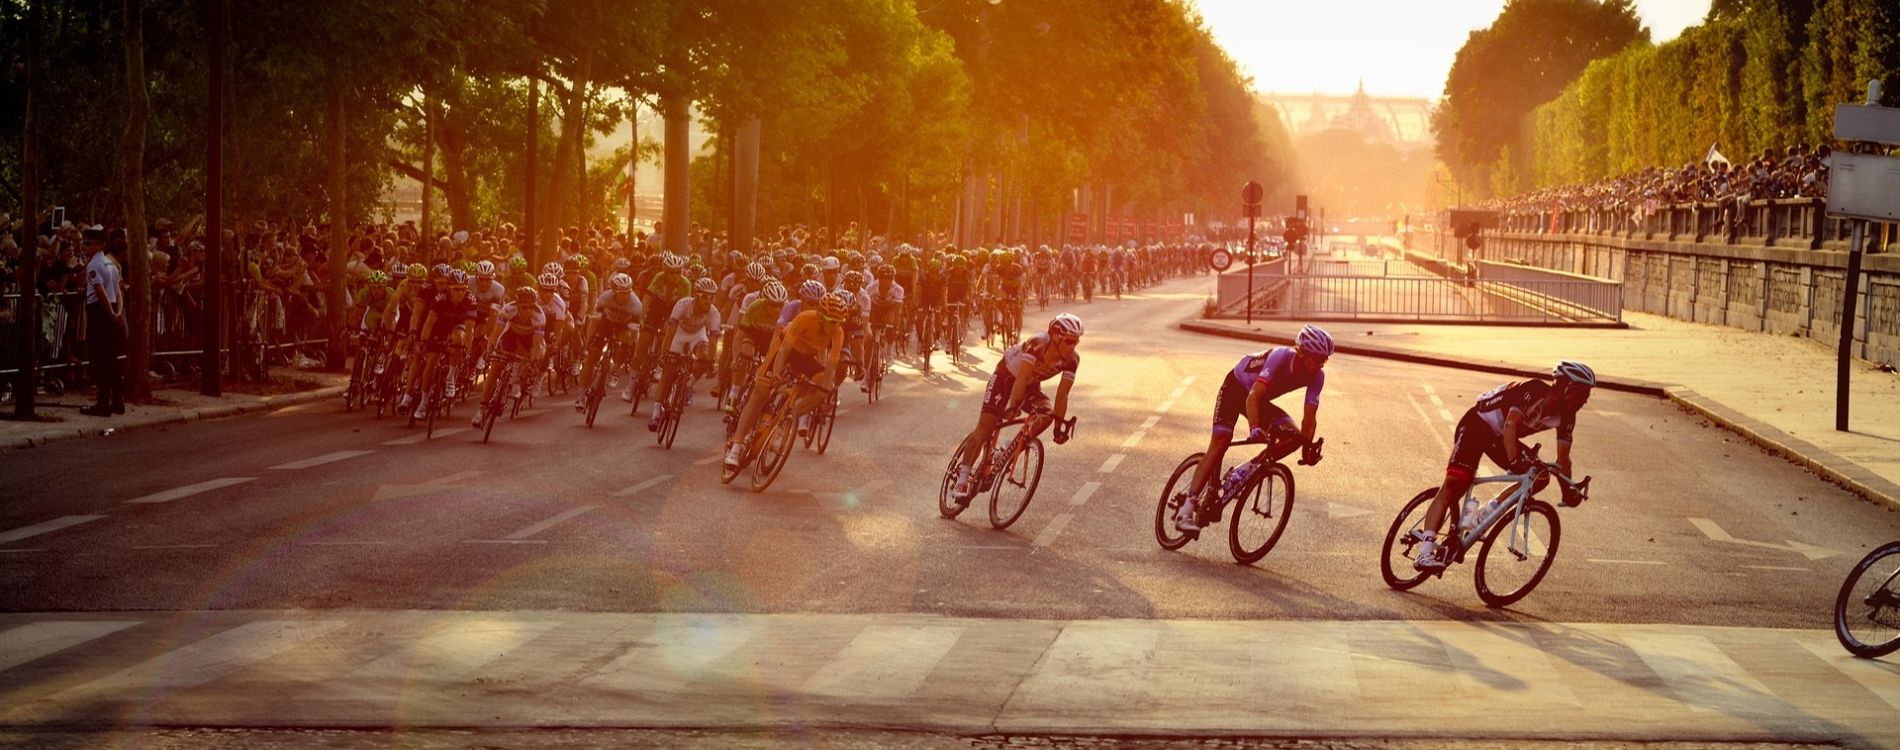 Tour de France cyclists in Paris sunset